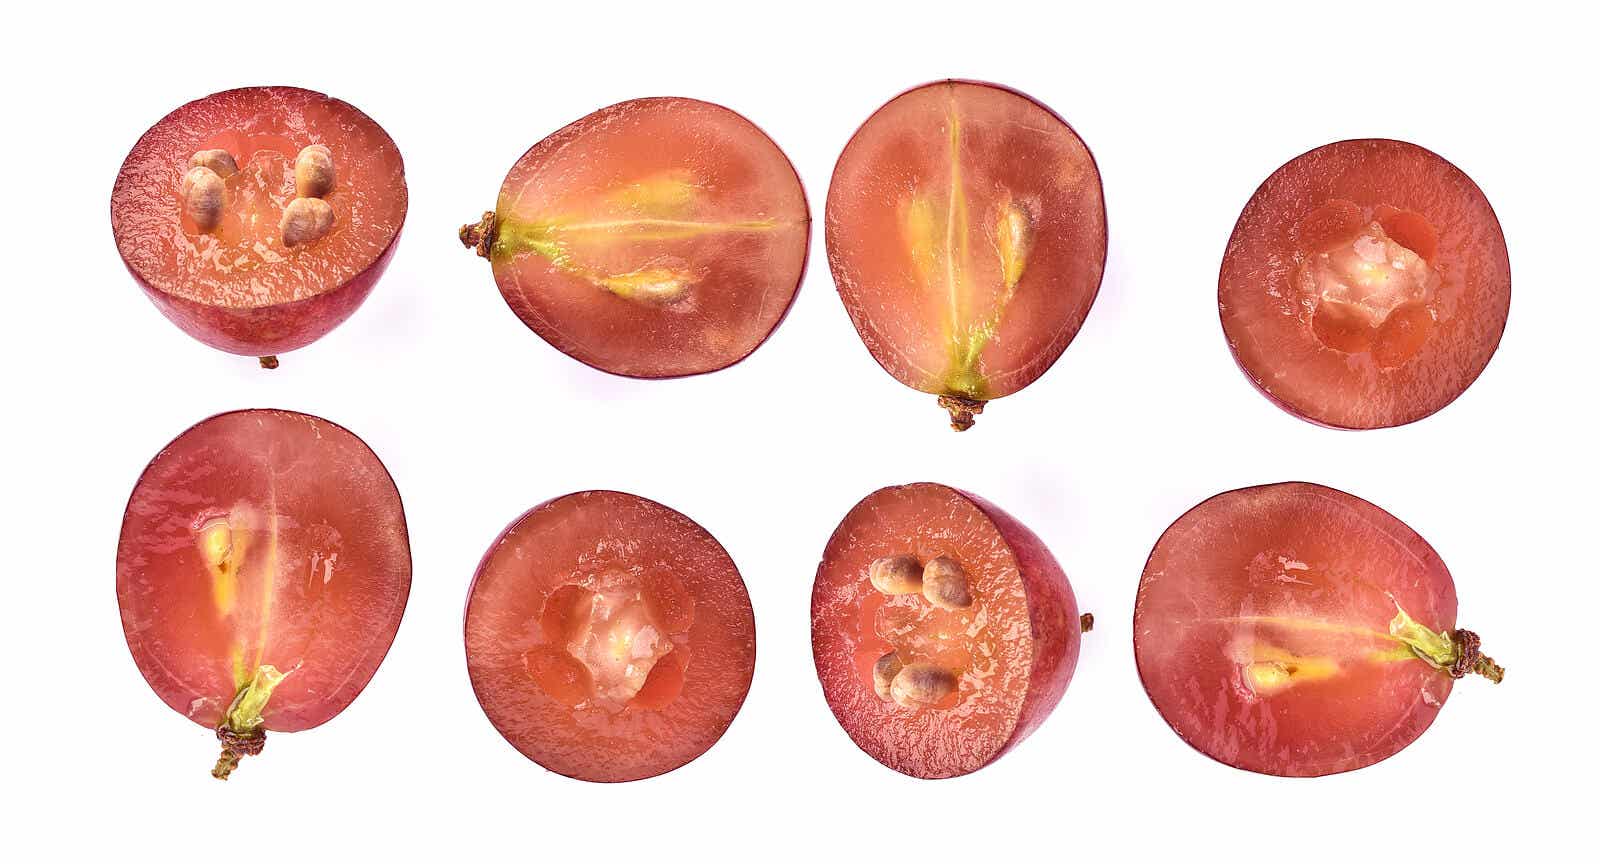 Beneficios de las semillas de uva para la salud y piel